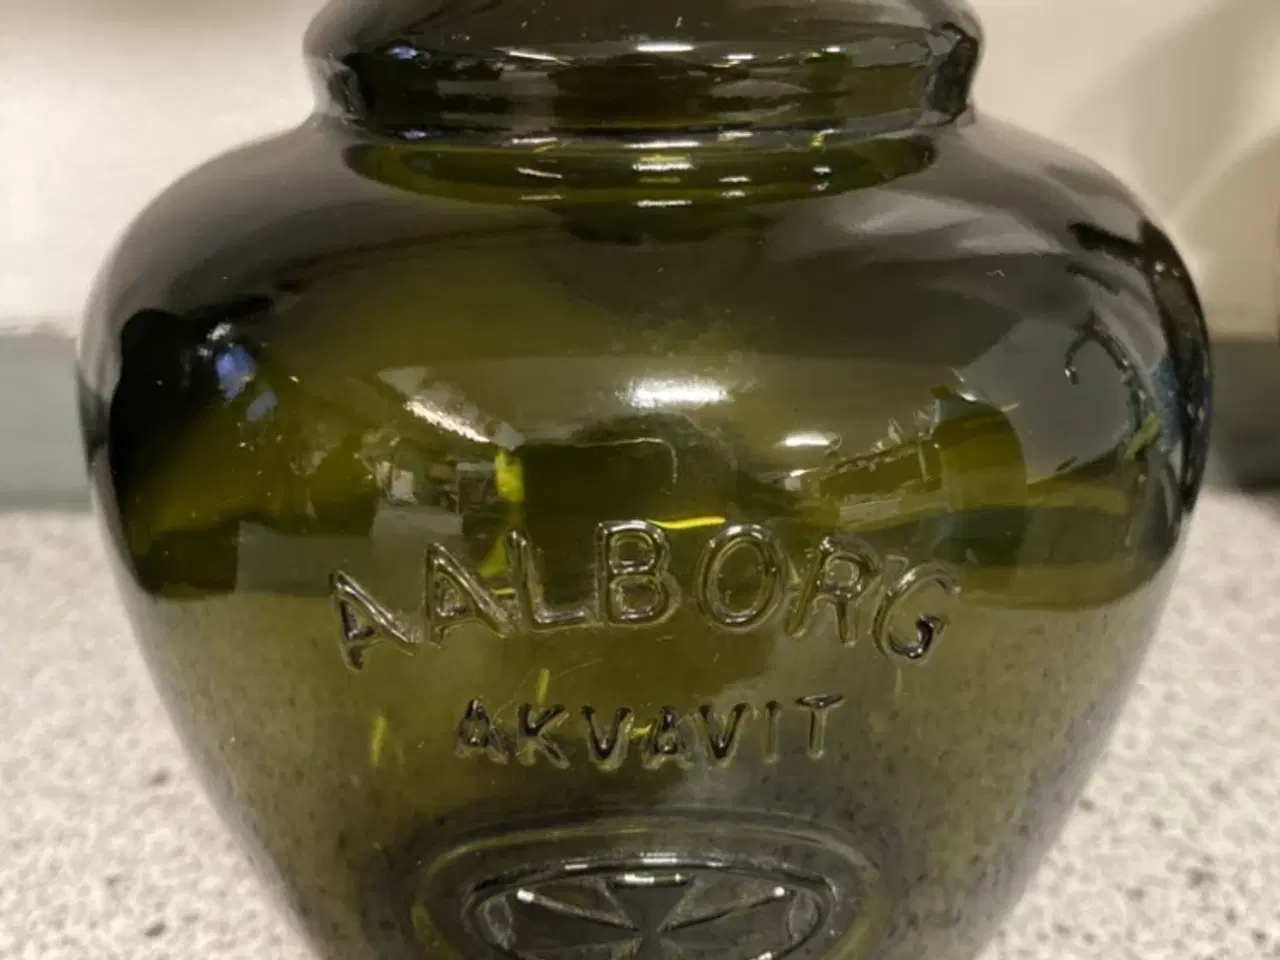 Billede 2 - Akvavit flasker med årstal 